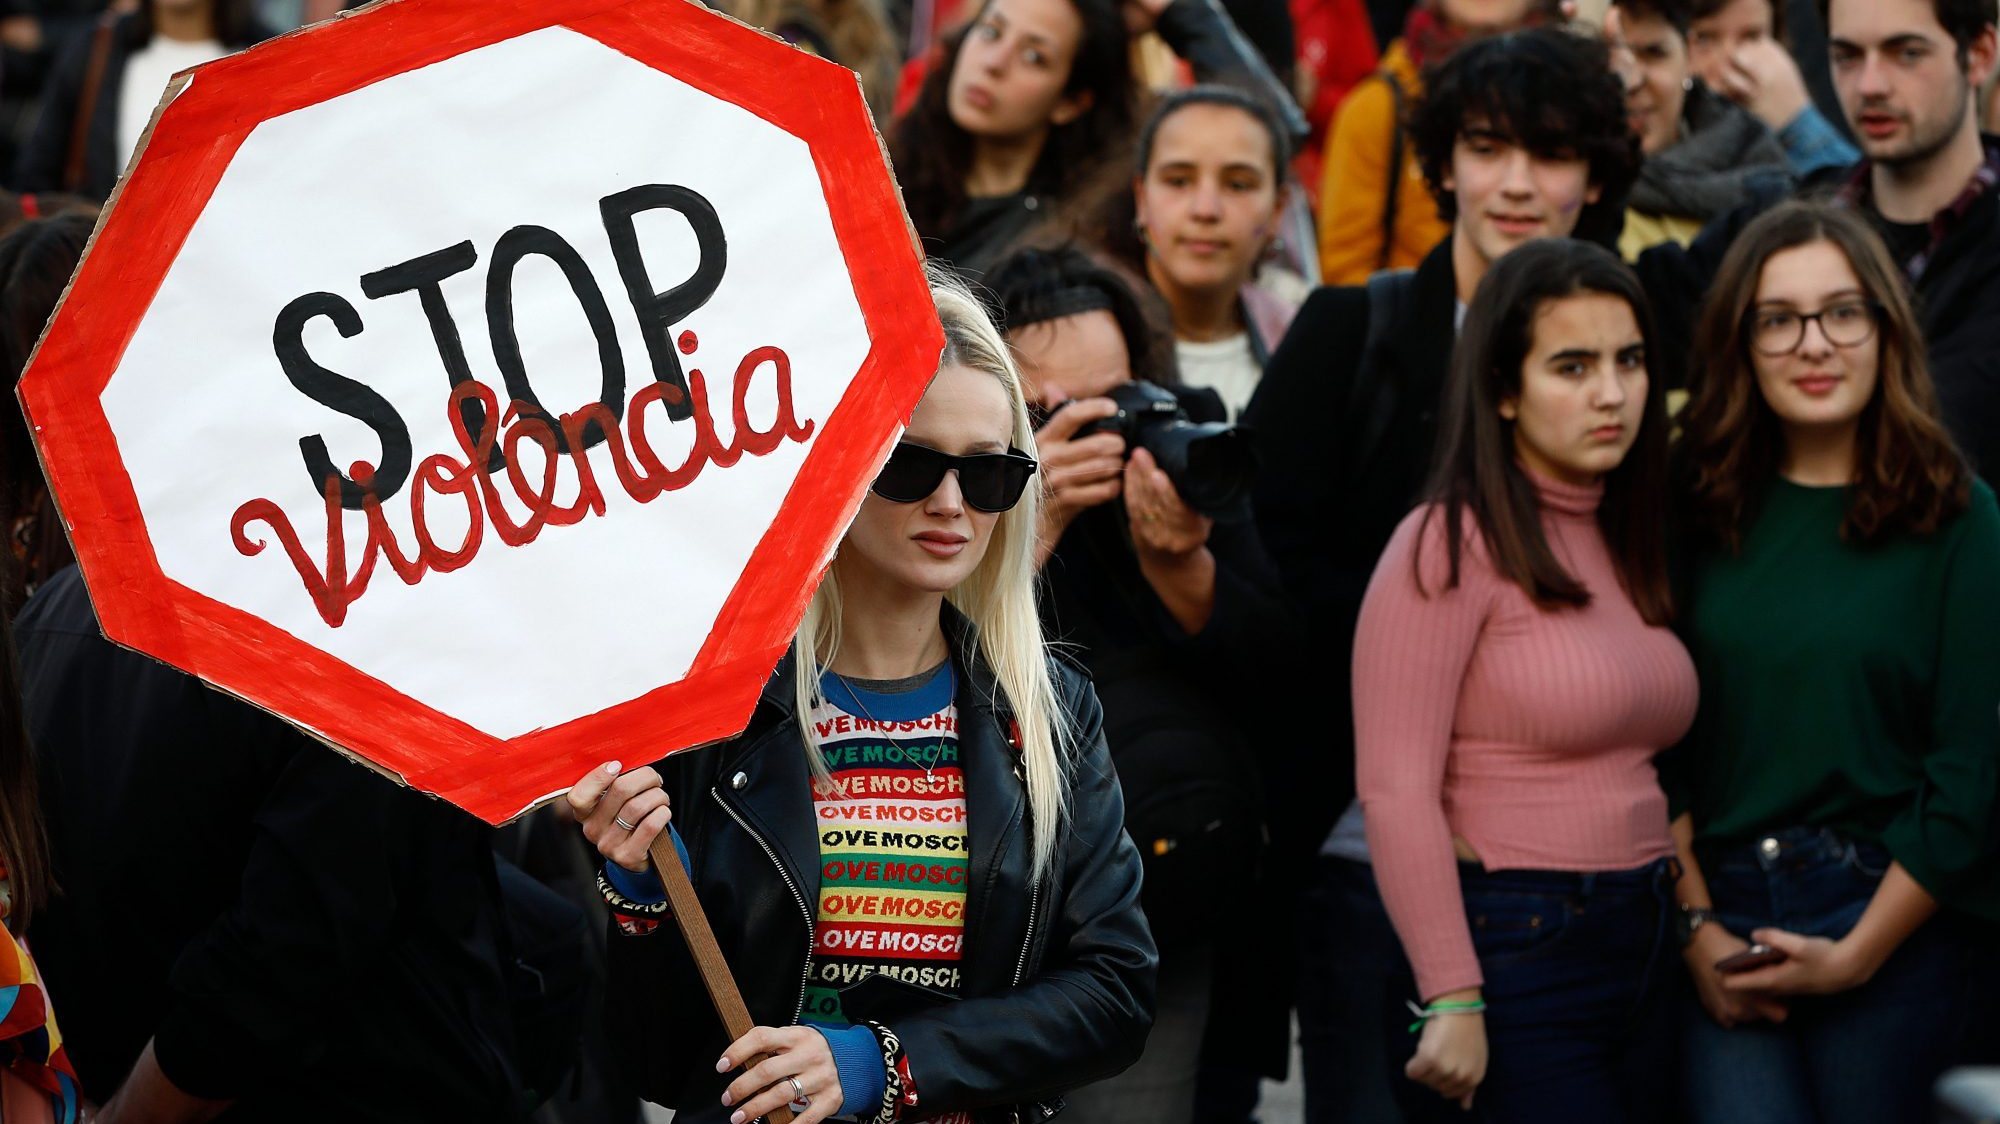 Está marcada, para este sábado, em Lisboa, uma Marcha pelo fim da Violência contra as Mulheres, que começa às 15h